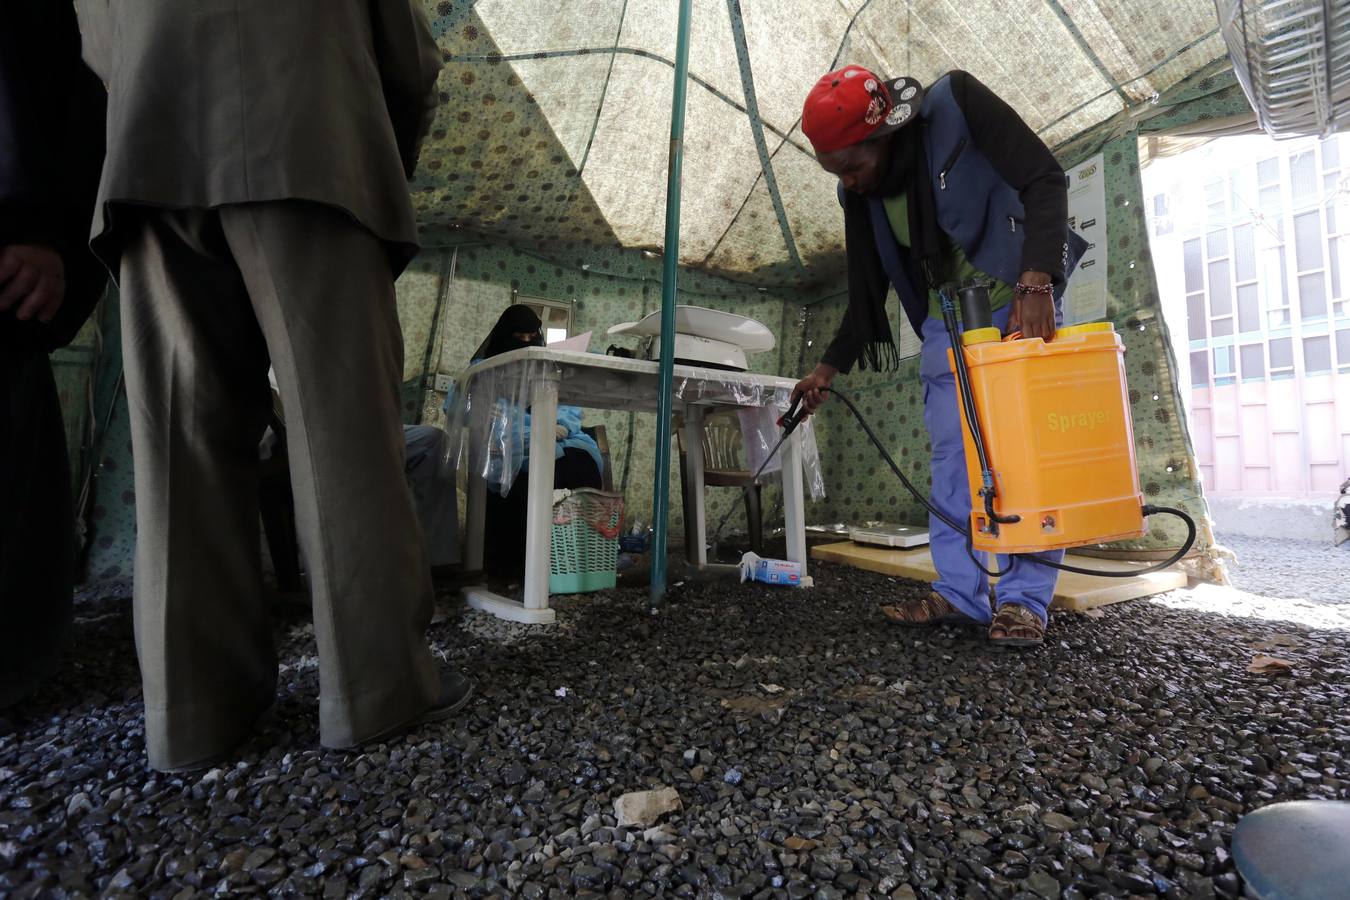 Los yemeníes infectados con cólera reciben tratamiento en un centro de tratamiento de cólera en medio de una nueva ola de epidemia de cólera en Sana'Äôa, Yemen, el 17 de marzo de 2019. Según informes de salud, una nueva ola de brotes de cólera que se propagan rápidamente en Yemen ha afectado a casi 90 miles de personas y causó al menos 130 muertes asociadas desde enero de 2019. La Organización Mundial de la Salud (OMS) ha informado que alrededor de 1 millón de personas en Yemen se han visto afectadas por la epidemia de cólera y más de 2,515 muertes asociadas desde abril de 2017.